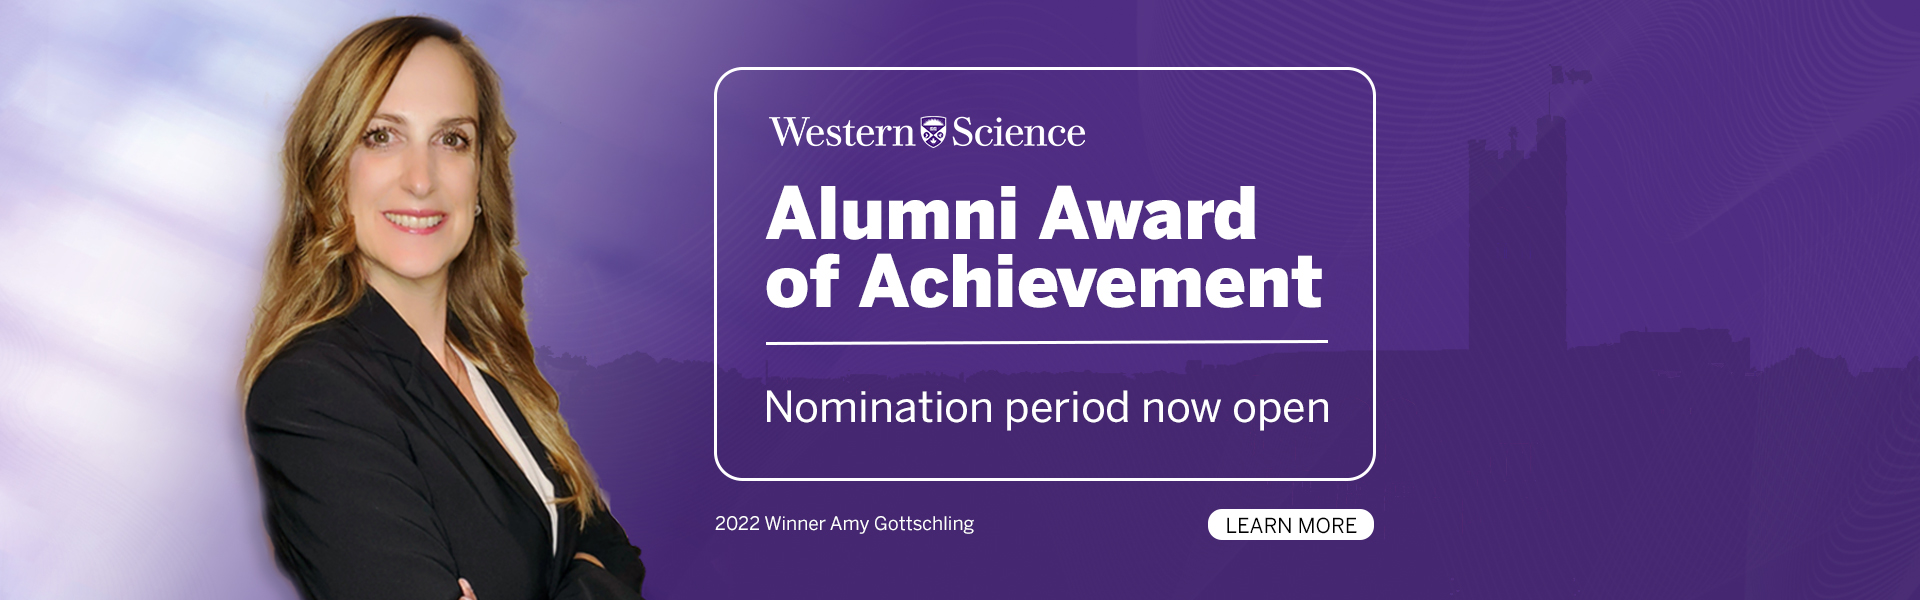 Alumni Award of Achievement